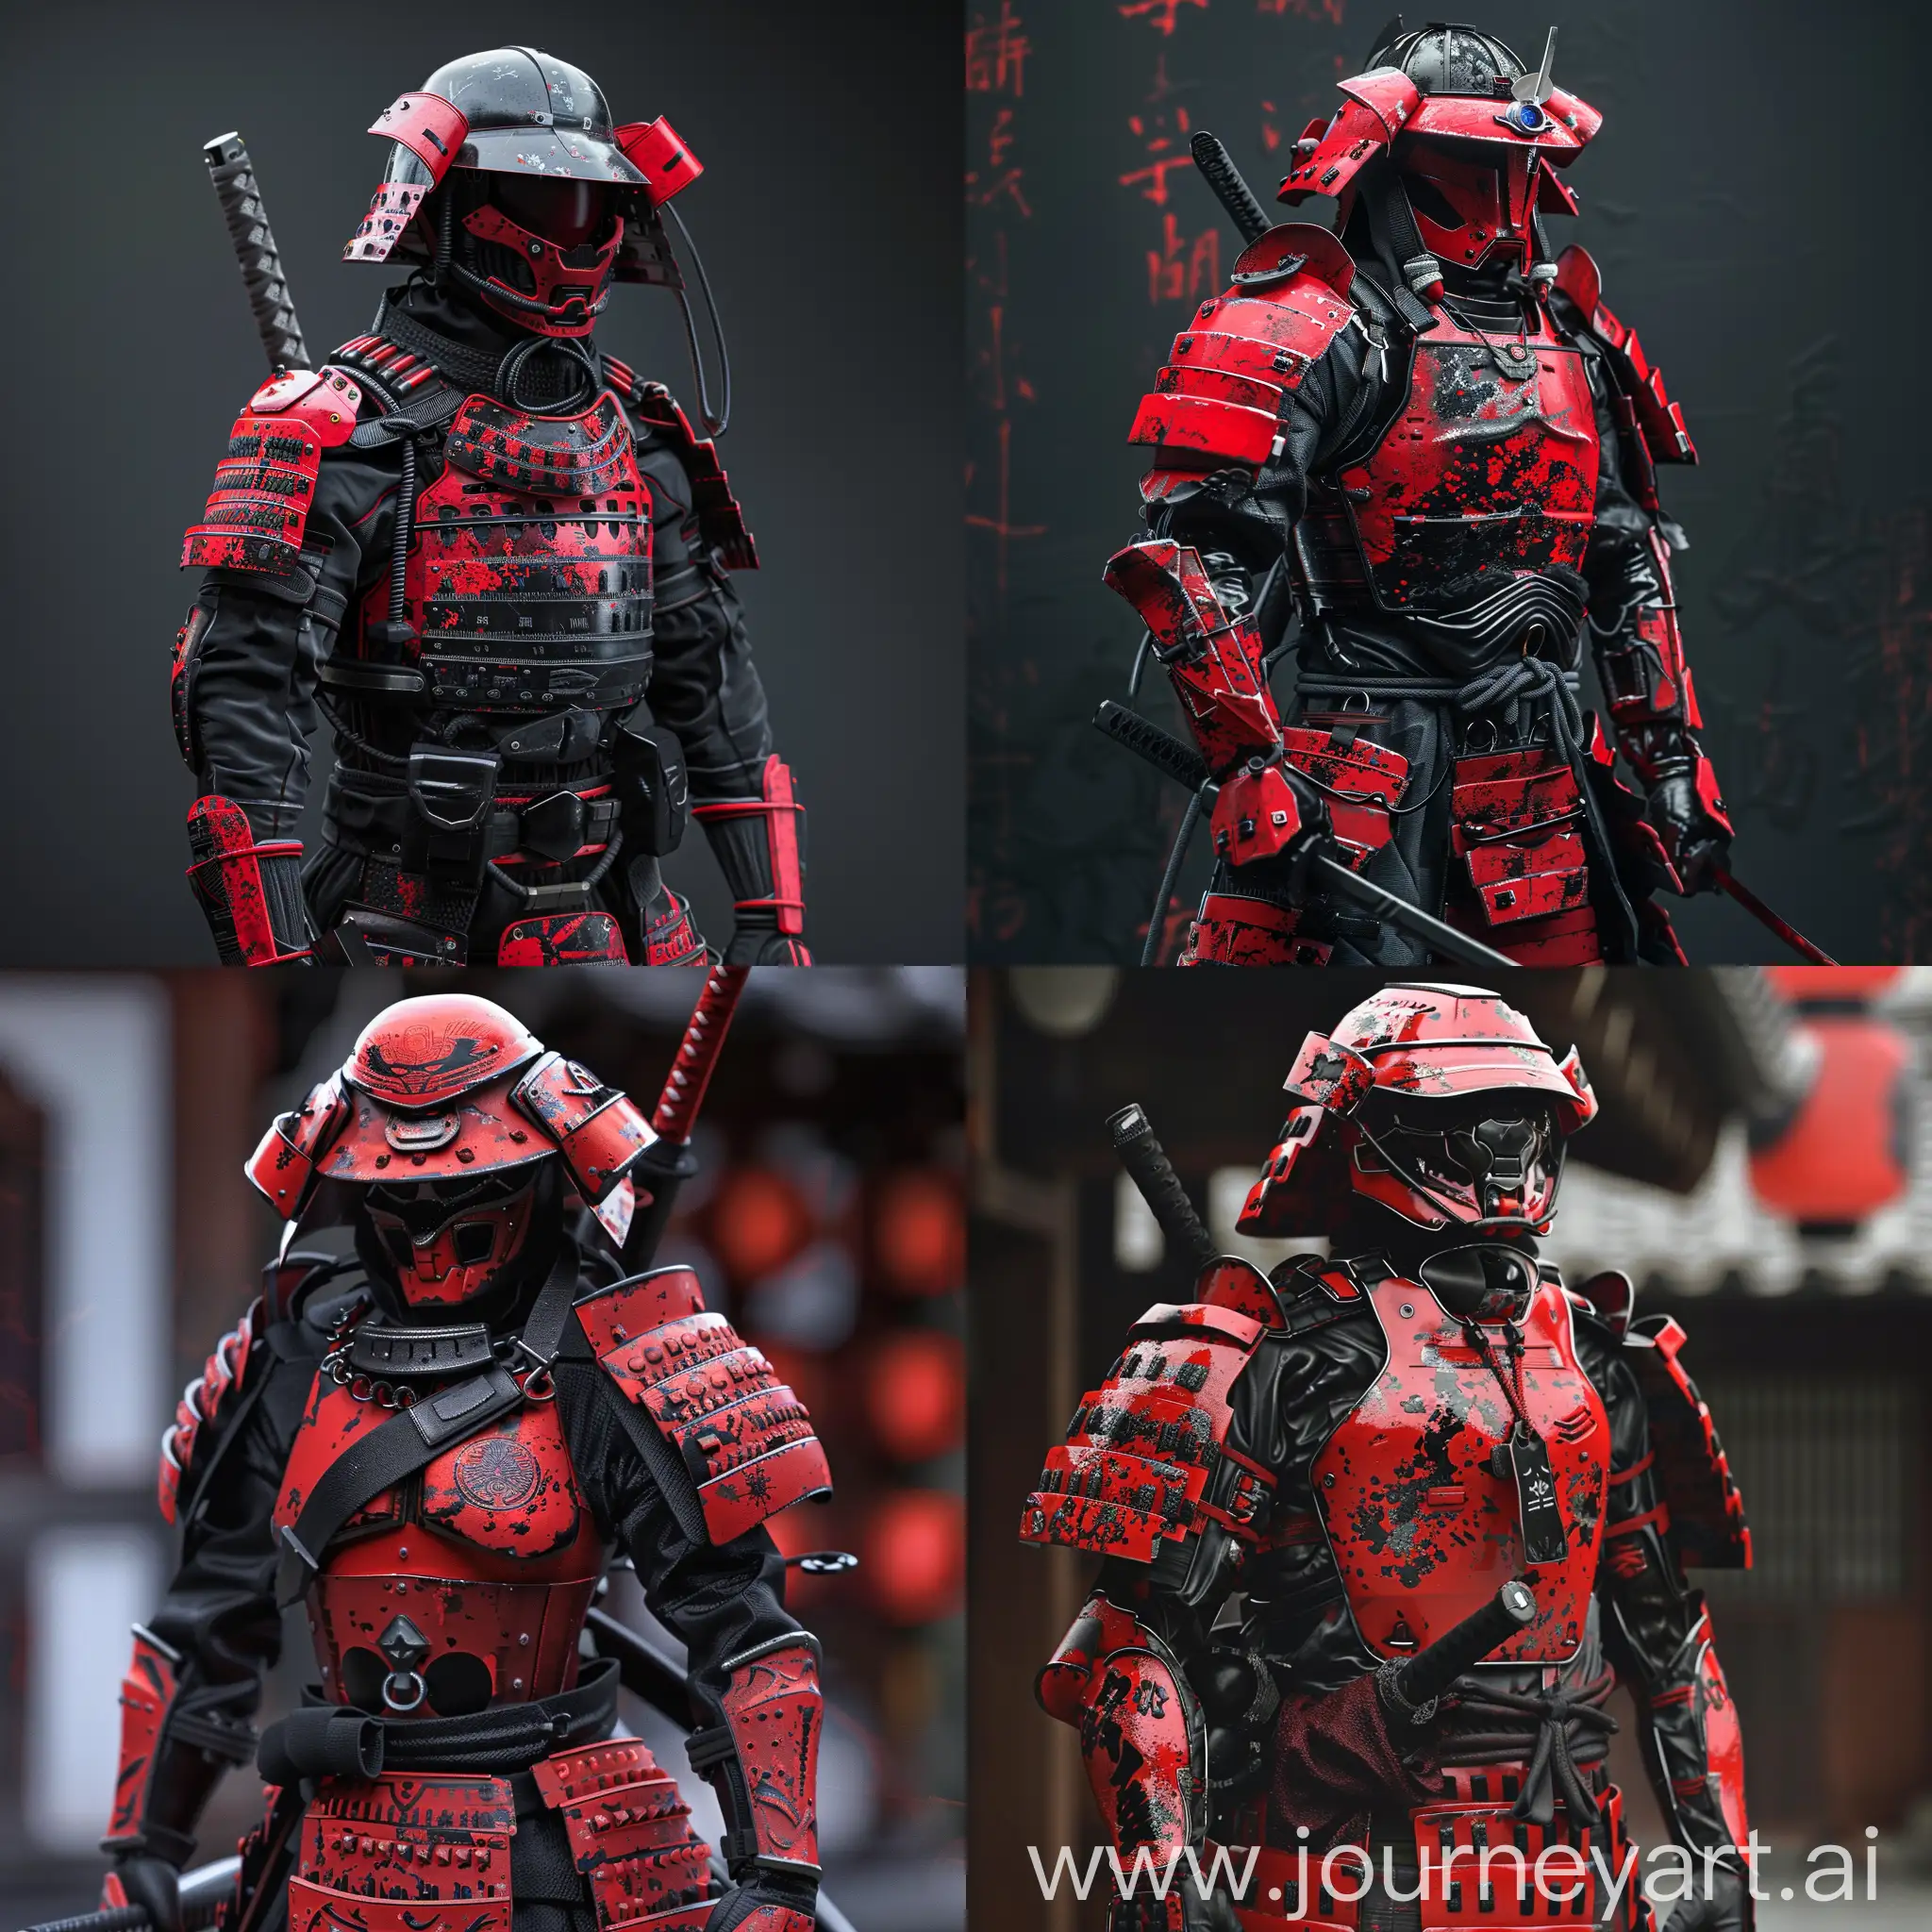 Futuristic-Cyberpunk-Samurai-Trooper-in-Red-and-Black